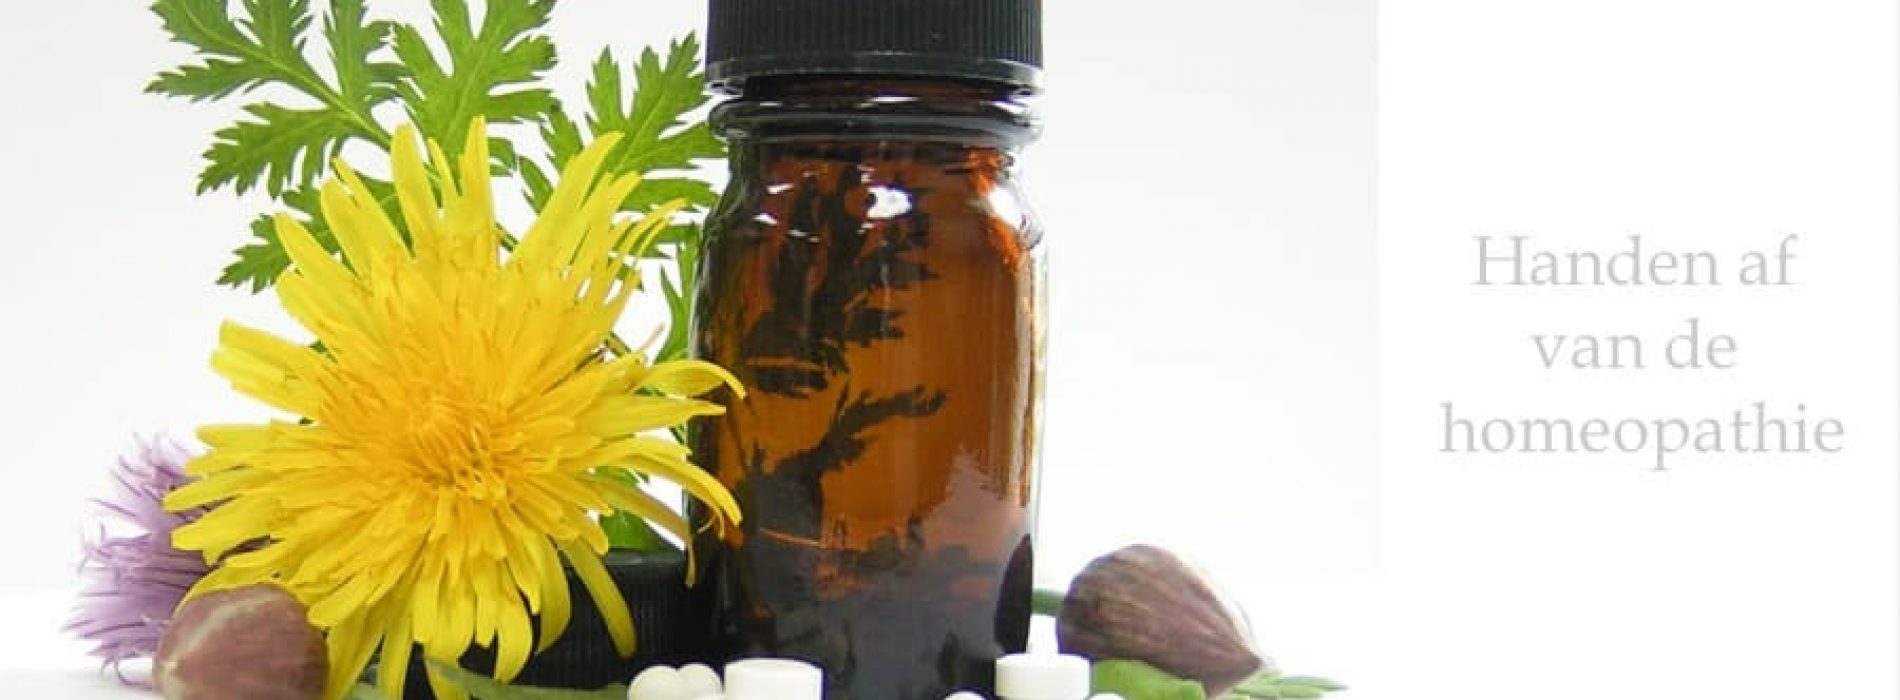 Handen af van de homeopathie